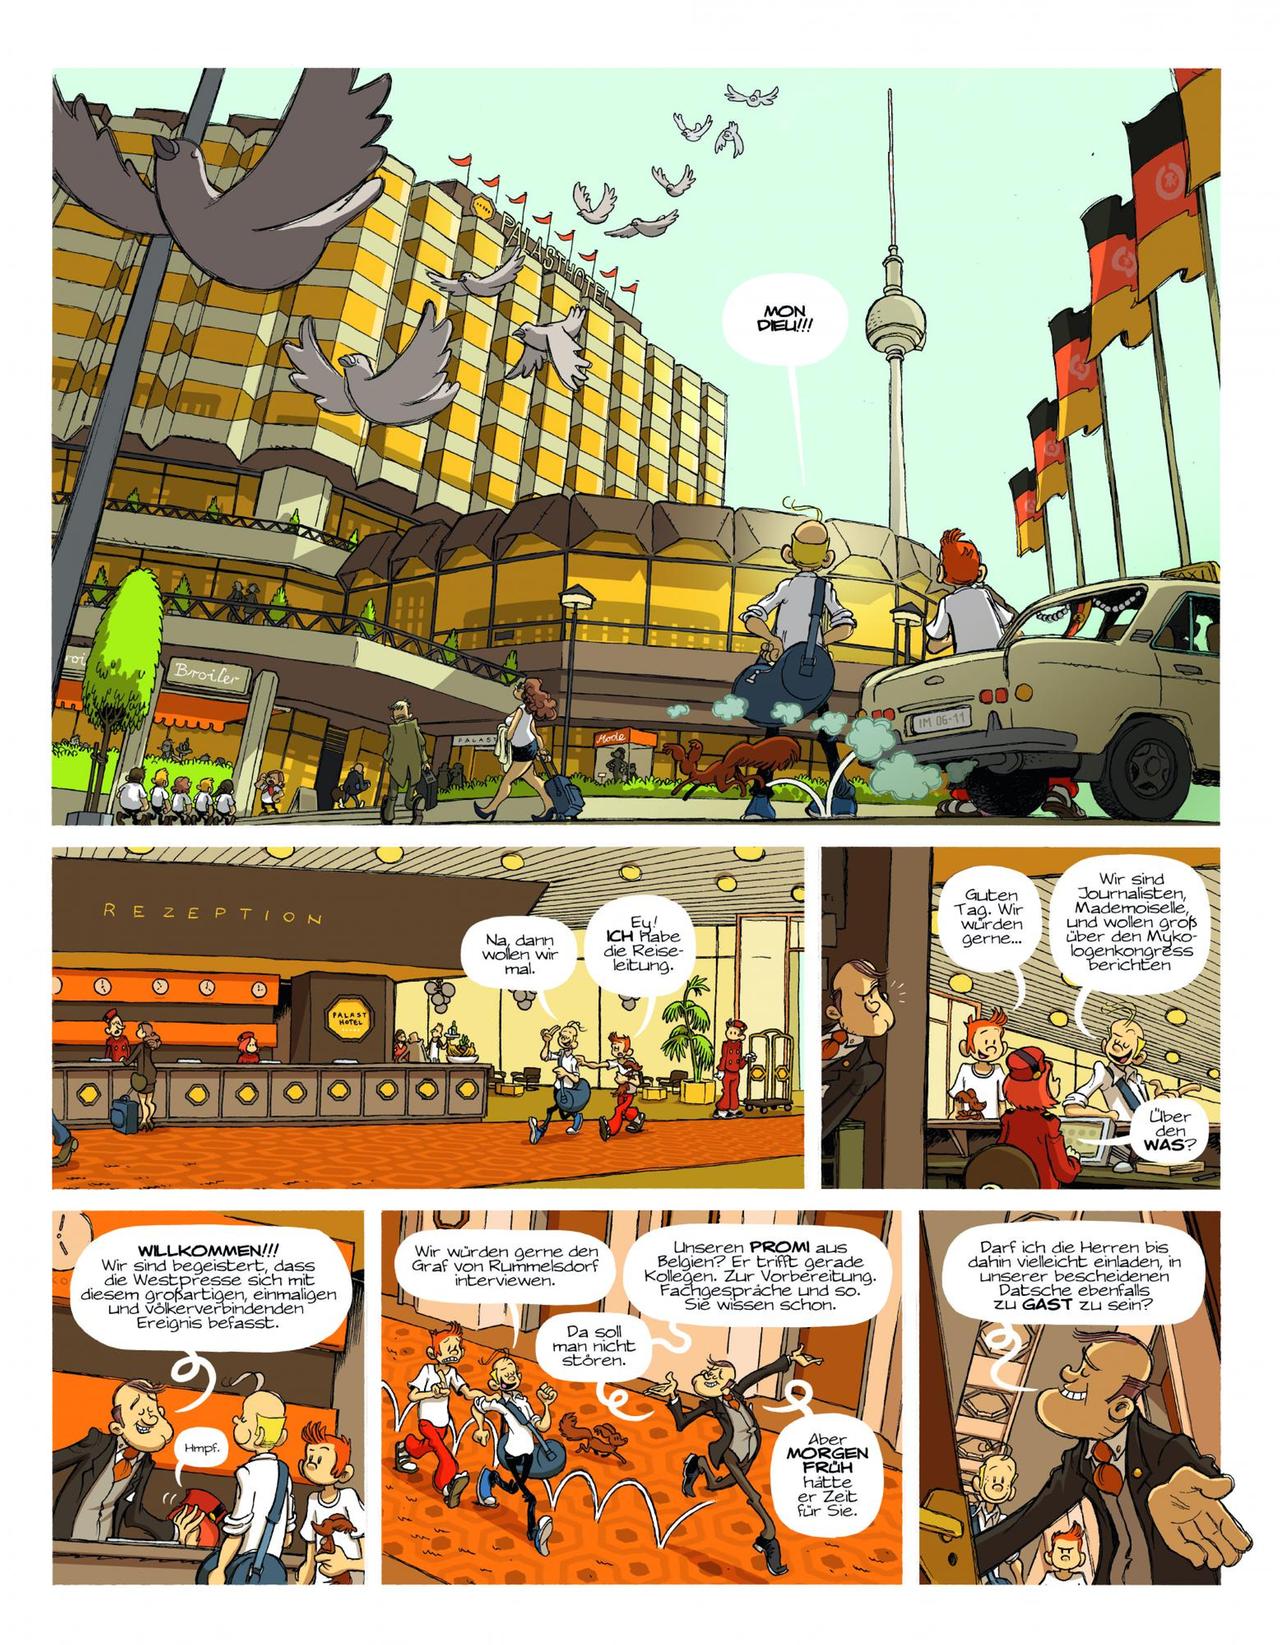 Die Seite aus dem Comic "Spirou in Berlin" von Flix zeigt unter anderem den Berliner Fernsehturm, das Palasthotel an der Spree sowie die Helden Spirou und Fantasio